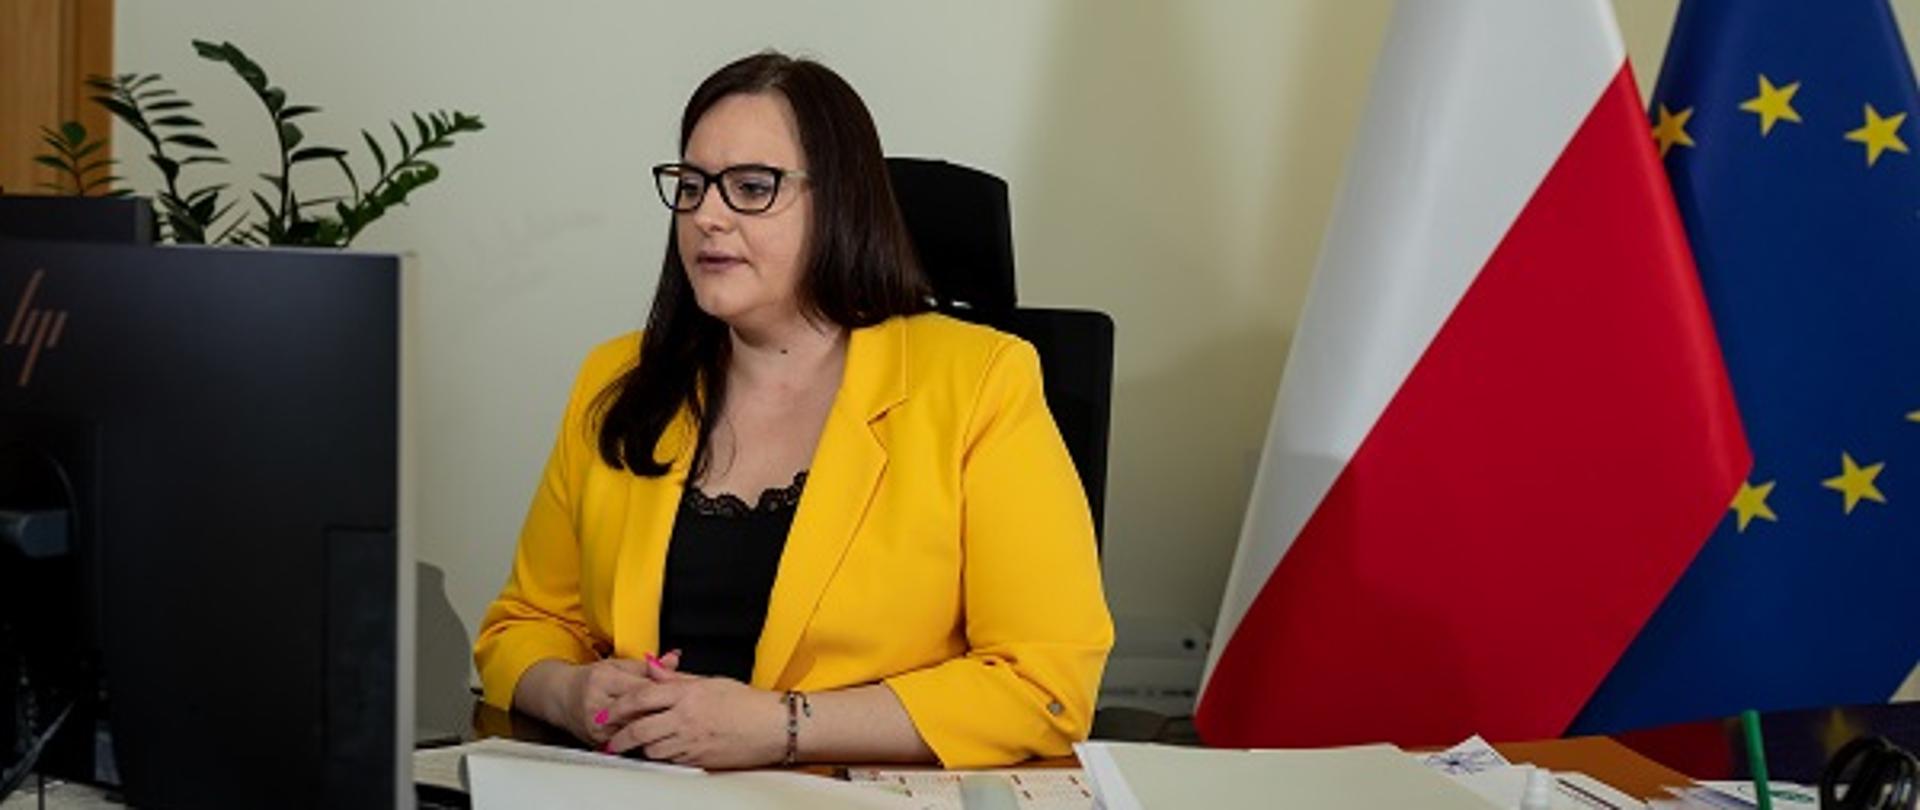 Minister Małgorzata Jarosińska-Jedynak siedzi za biurkiem przed komputerem, za plecami flagi UE i Polski